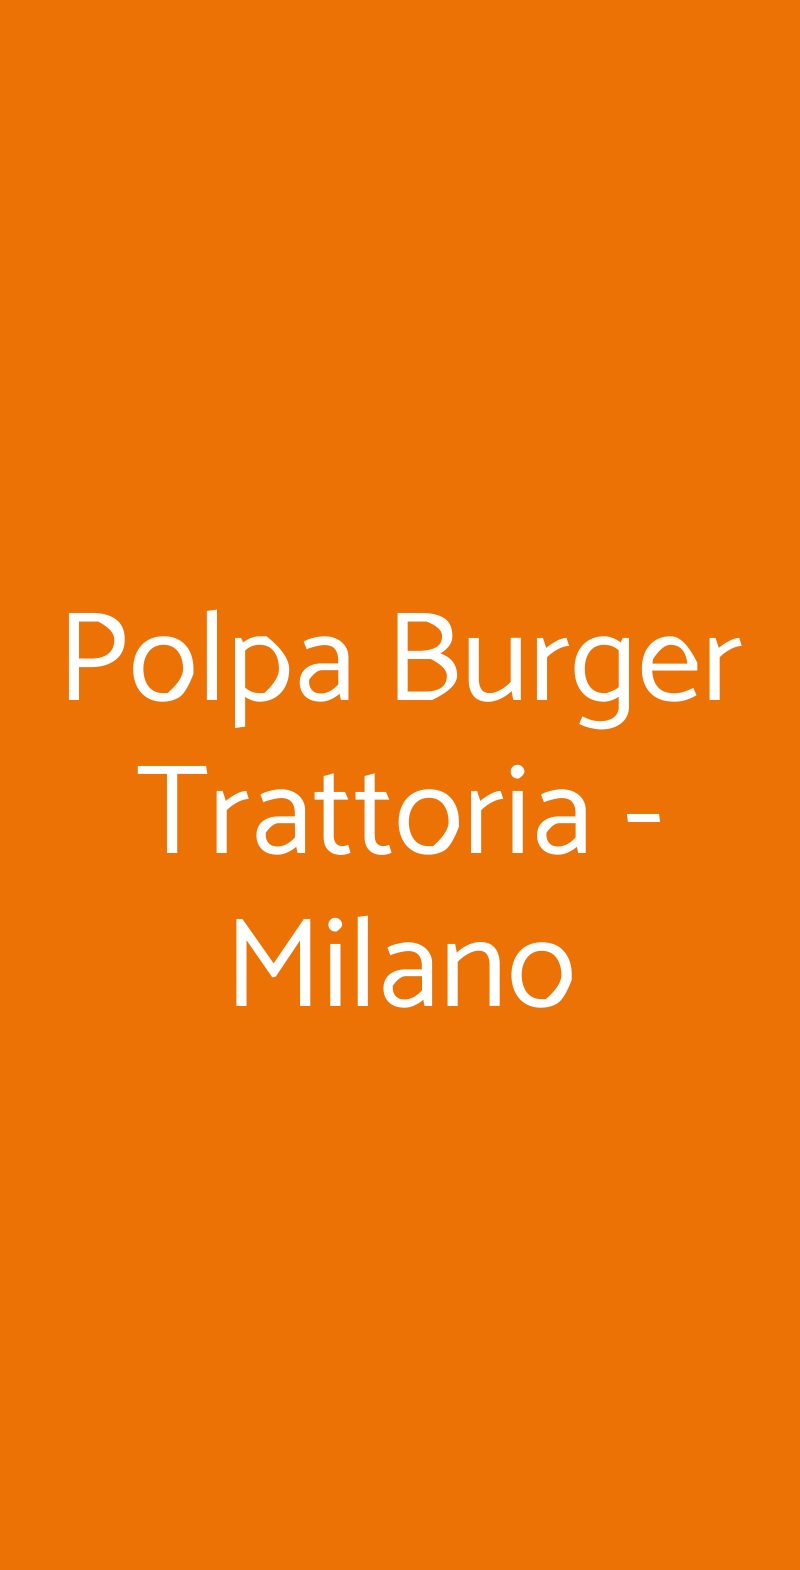 Polpa Burger Trattoria  Milano menù 1 pagina